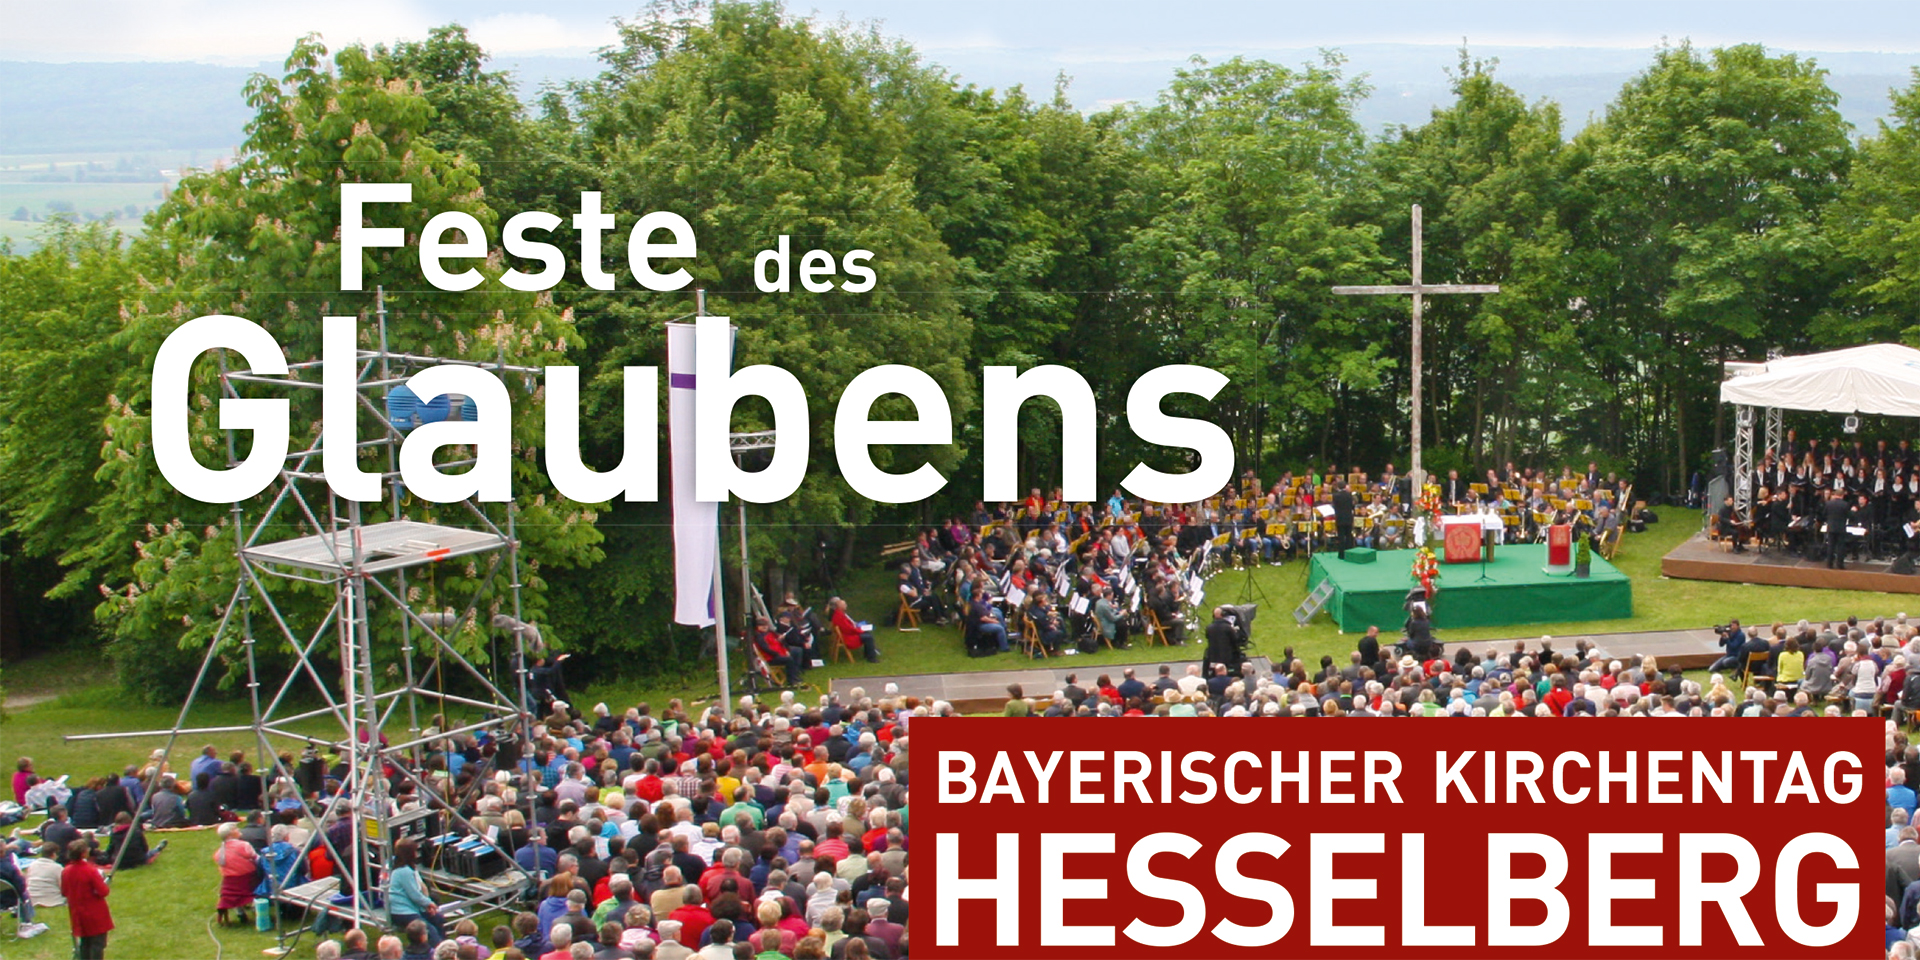 Bayerischer Kirchentag